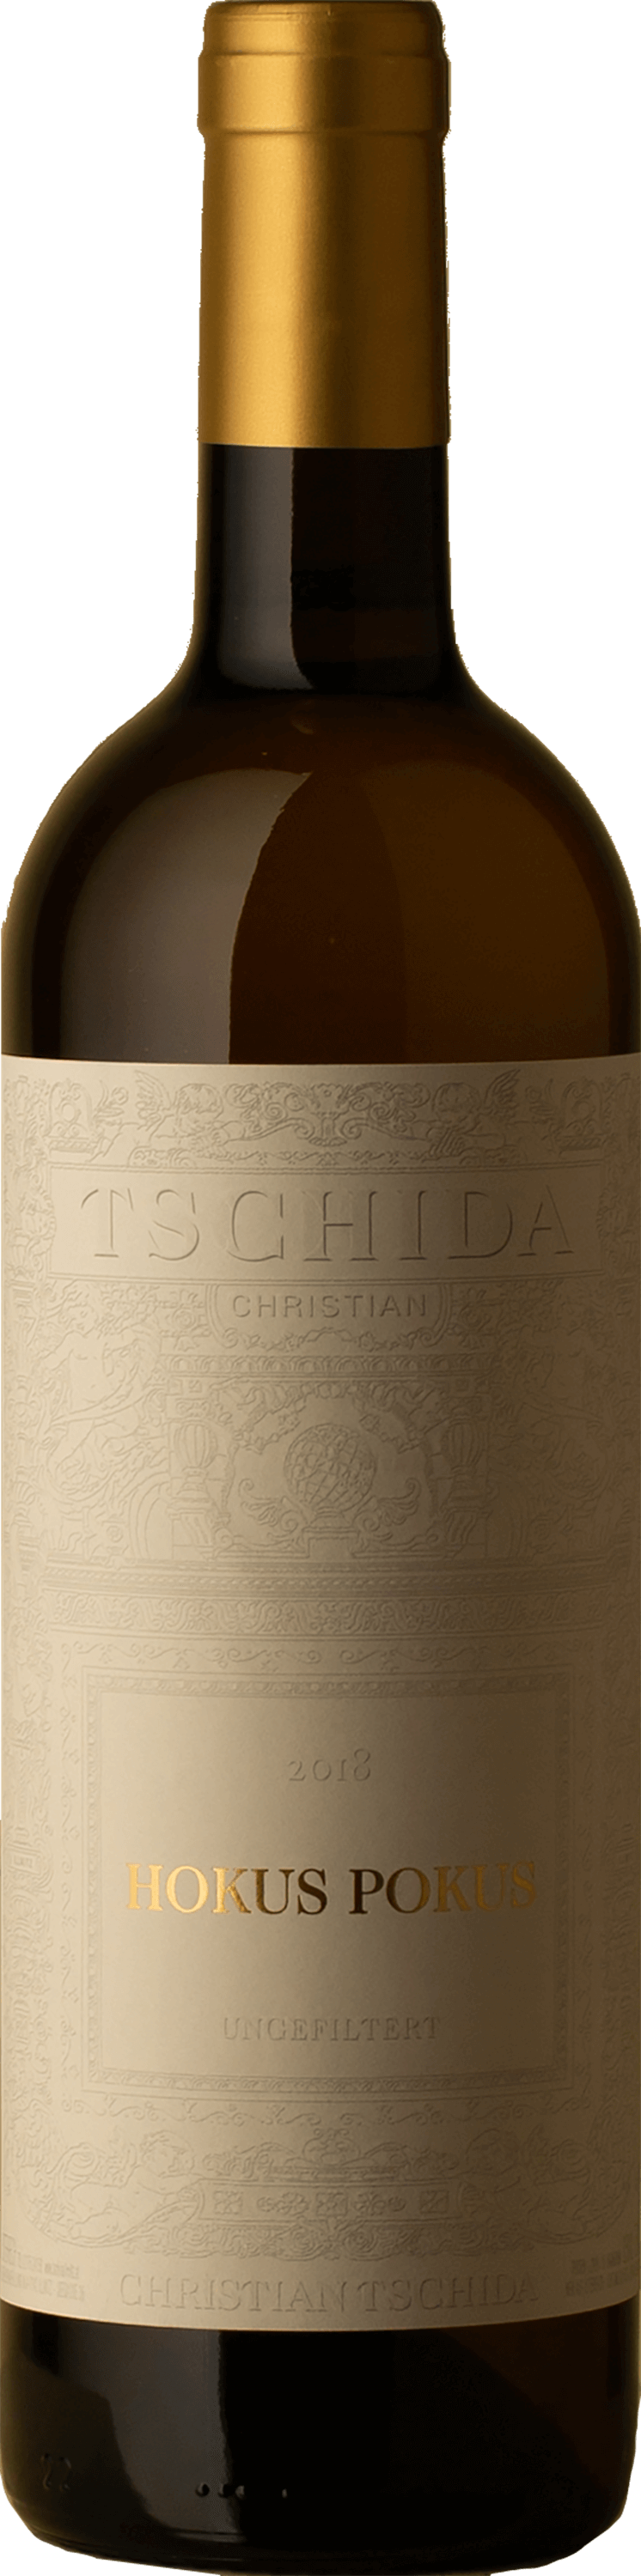 Christian Tschida - Hokus Pokus White Blend 2018 White Wine